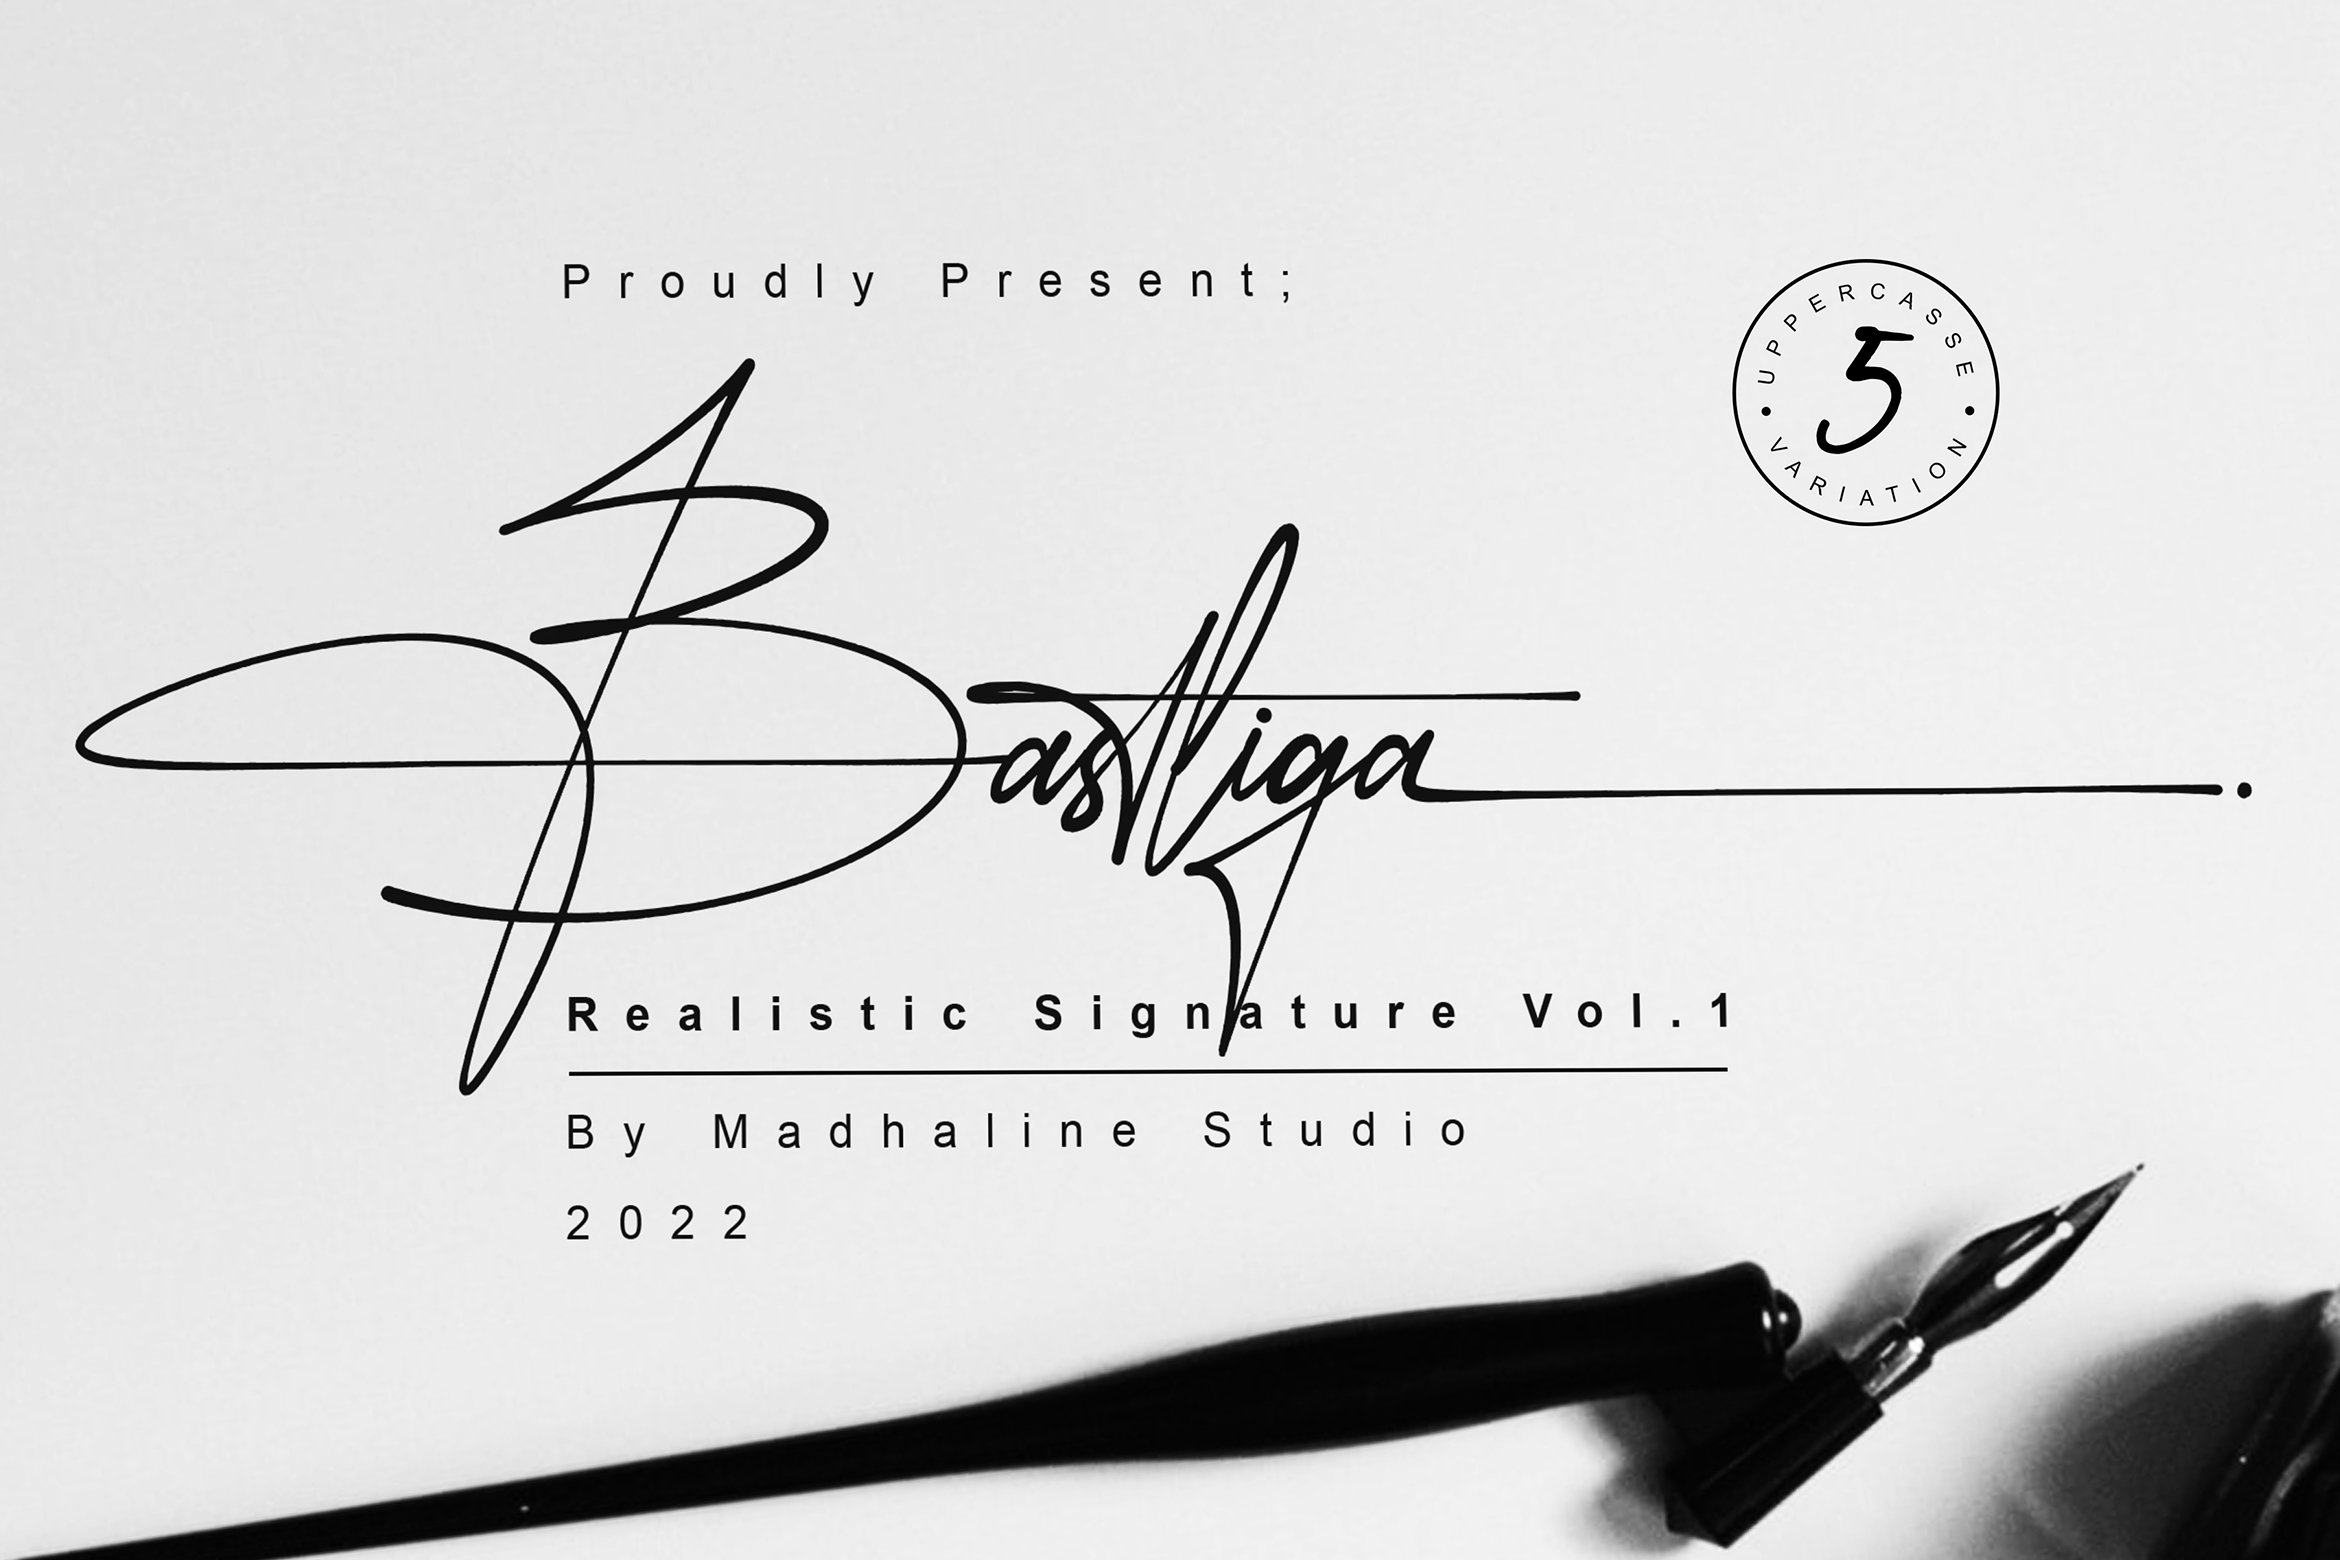 Bastliga 5 Realistic Signature Vol.1 cover image.